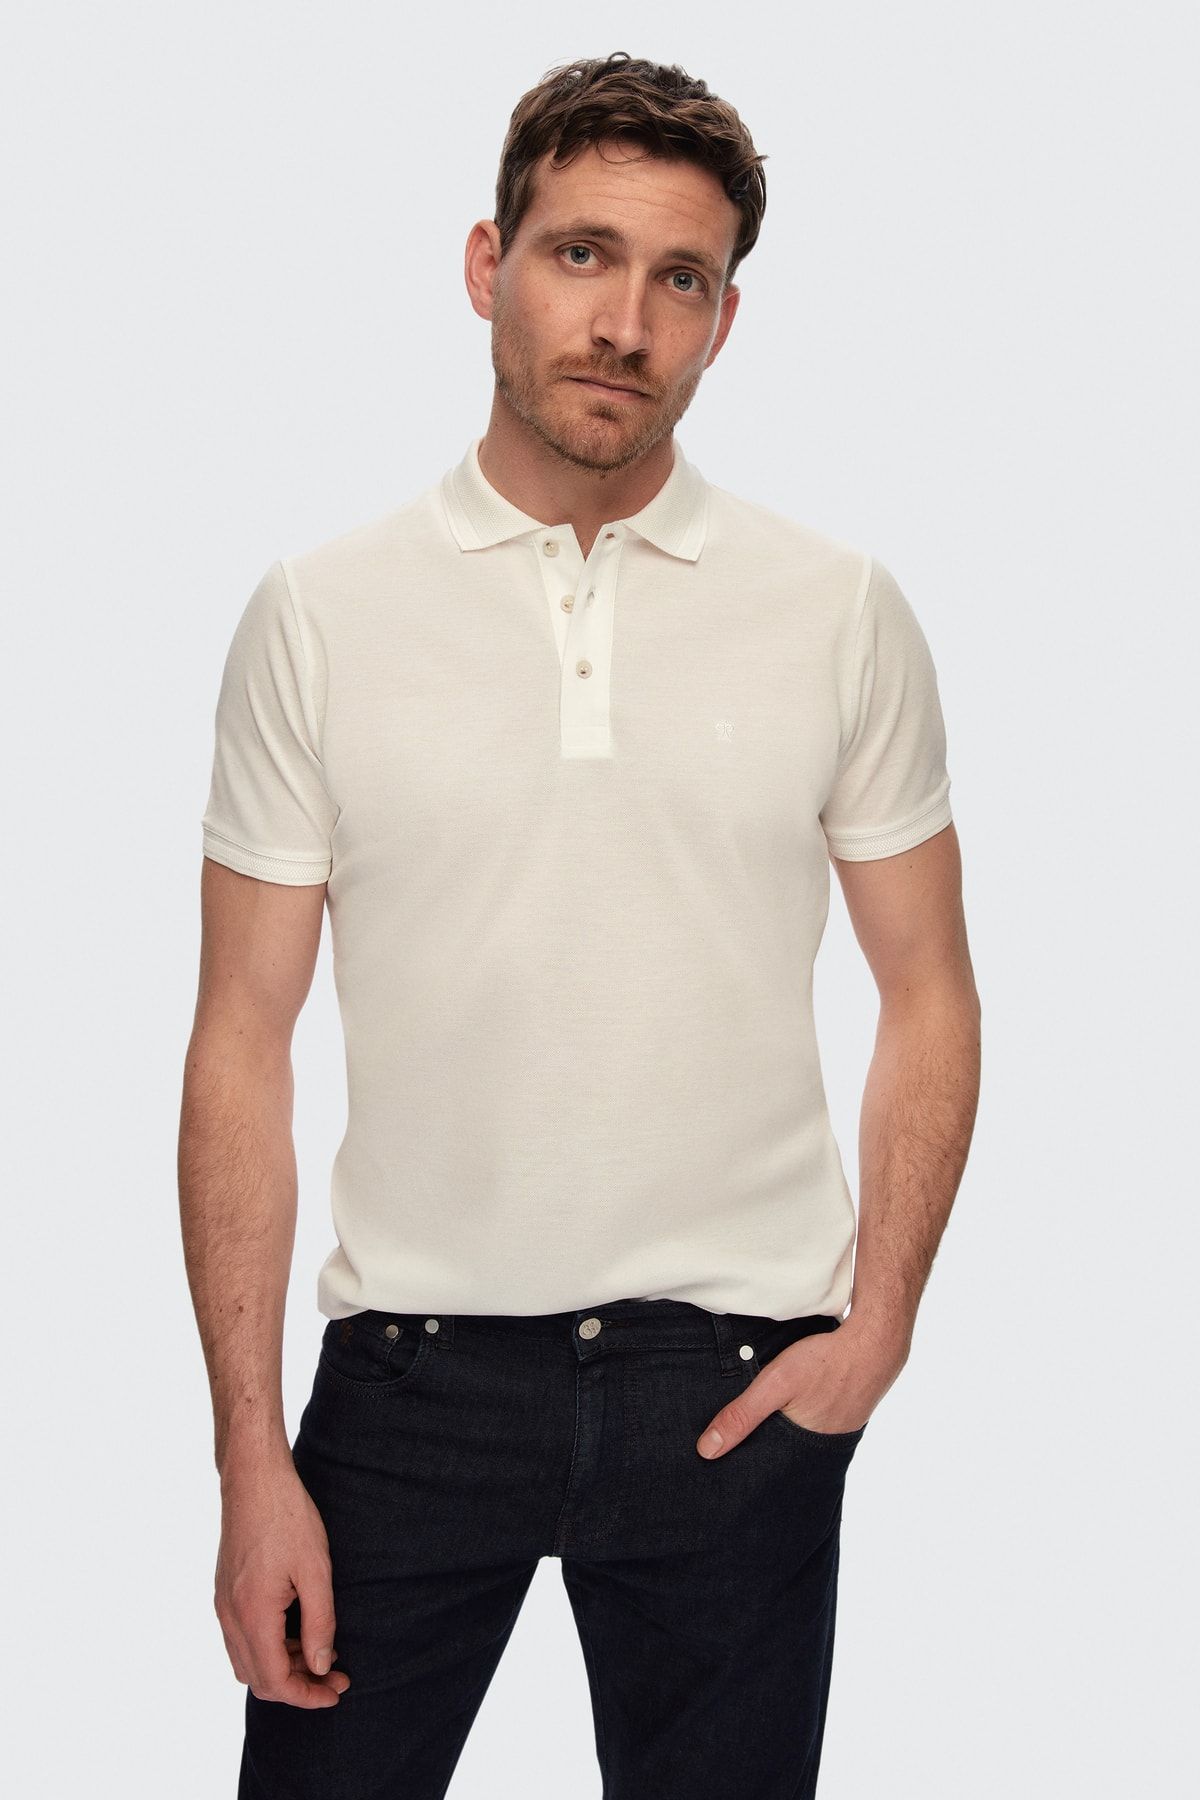 Damat Beyaz %100 Pamuk T-Shirt